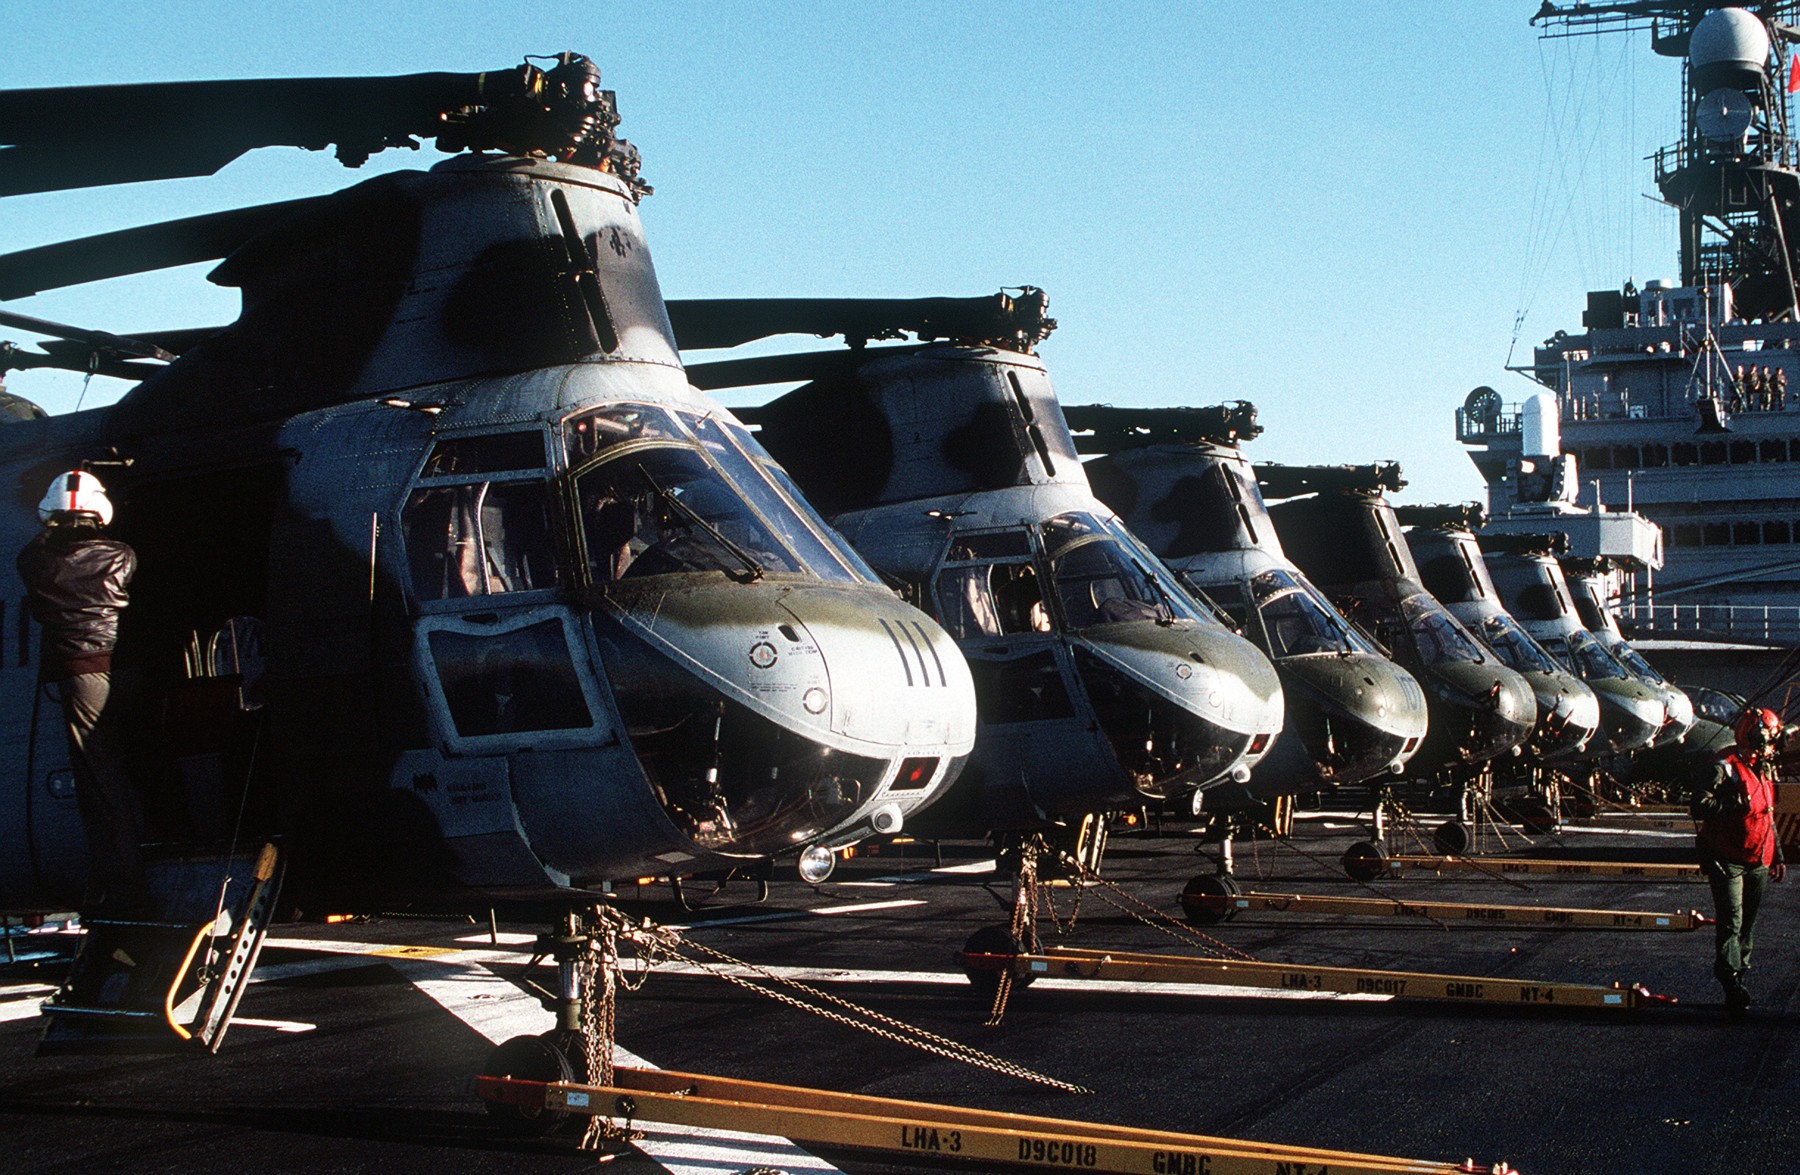 hmm-161 greyhawks marine medium helicopter squadron ch-46e sea knight usmc 03 uss belleau wood lha-3